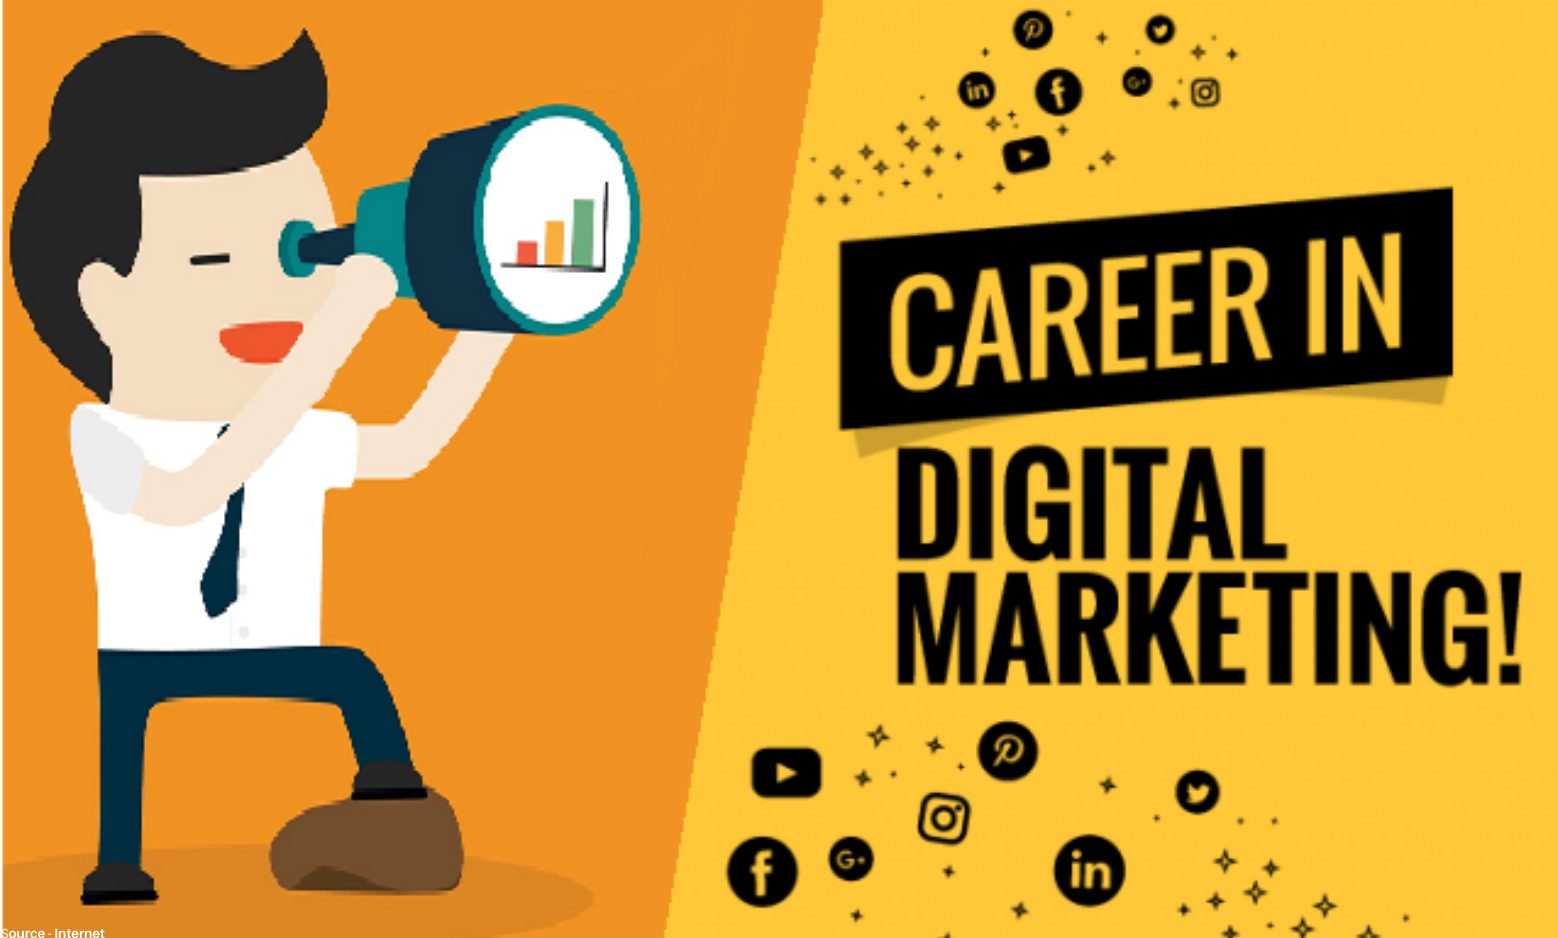 Digital Marketing Career Option